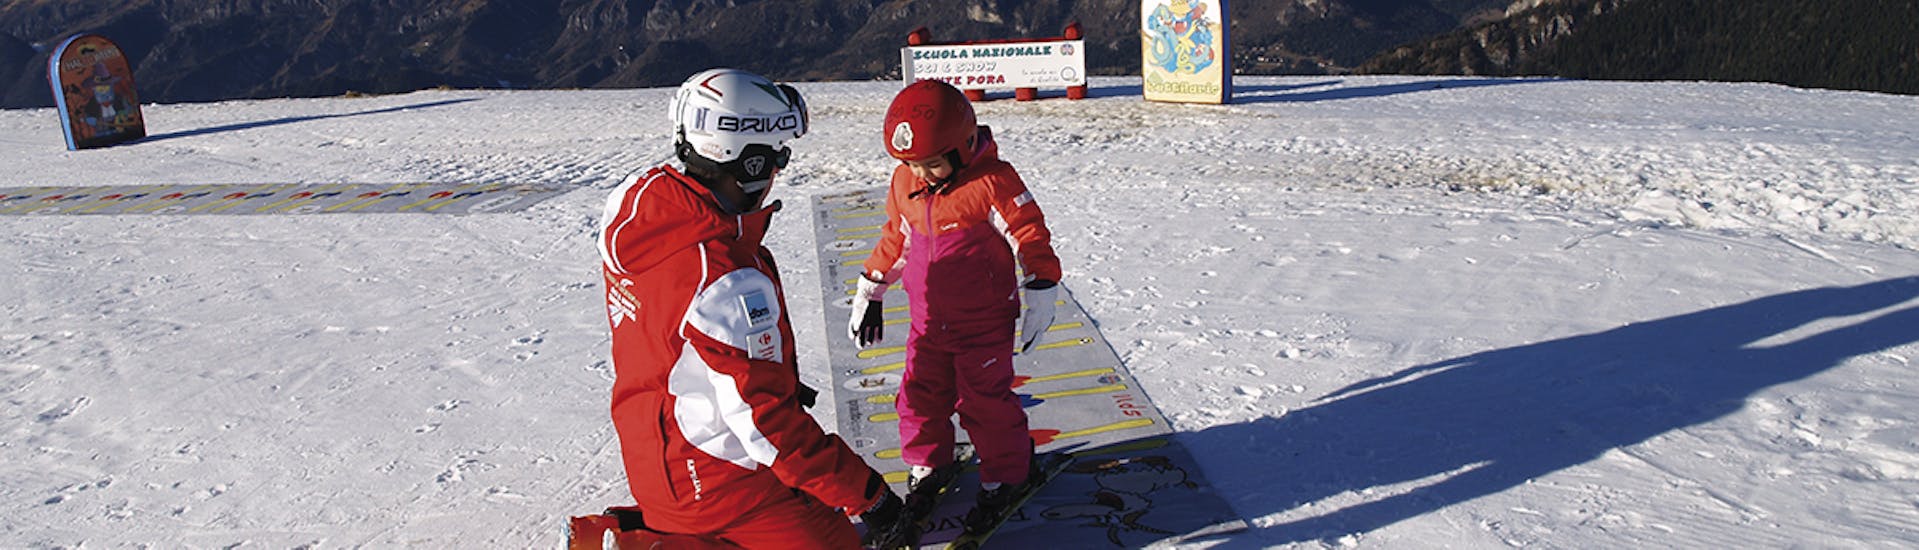 Primi passi sulla neve per un giovane partecipante di una delle lezioni private di sci per bambini di tutti i livelli al Monte Pora.